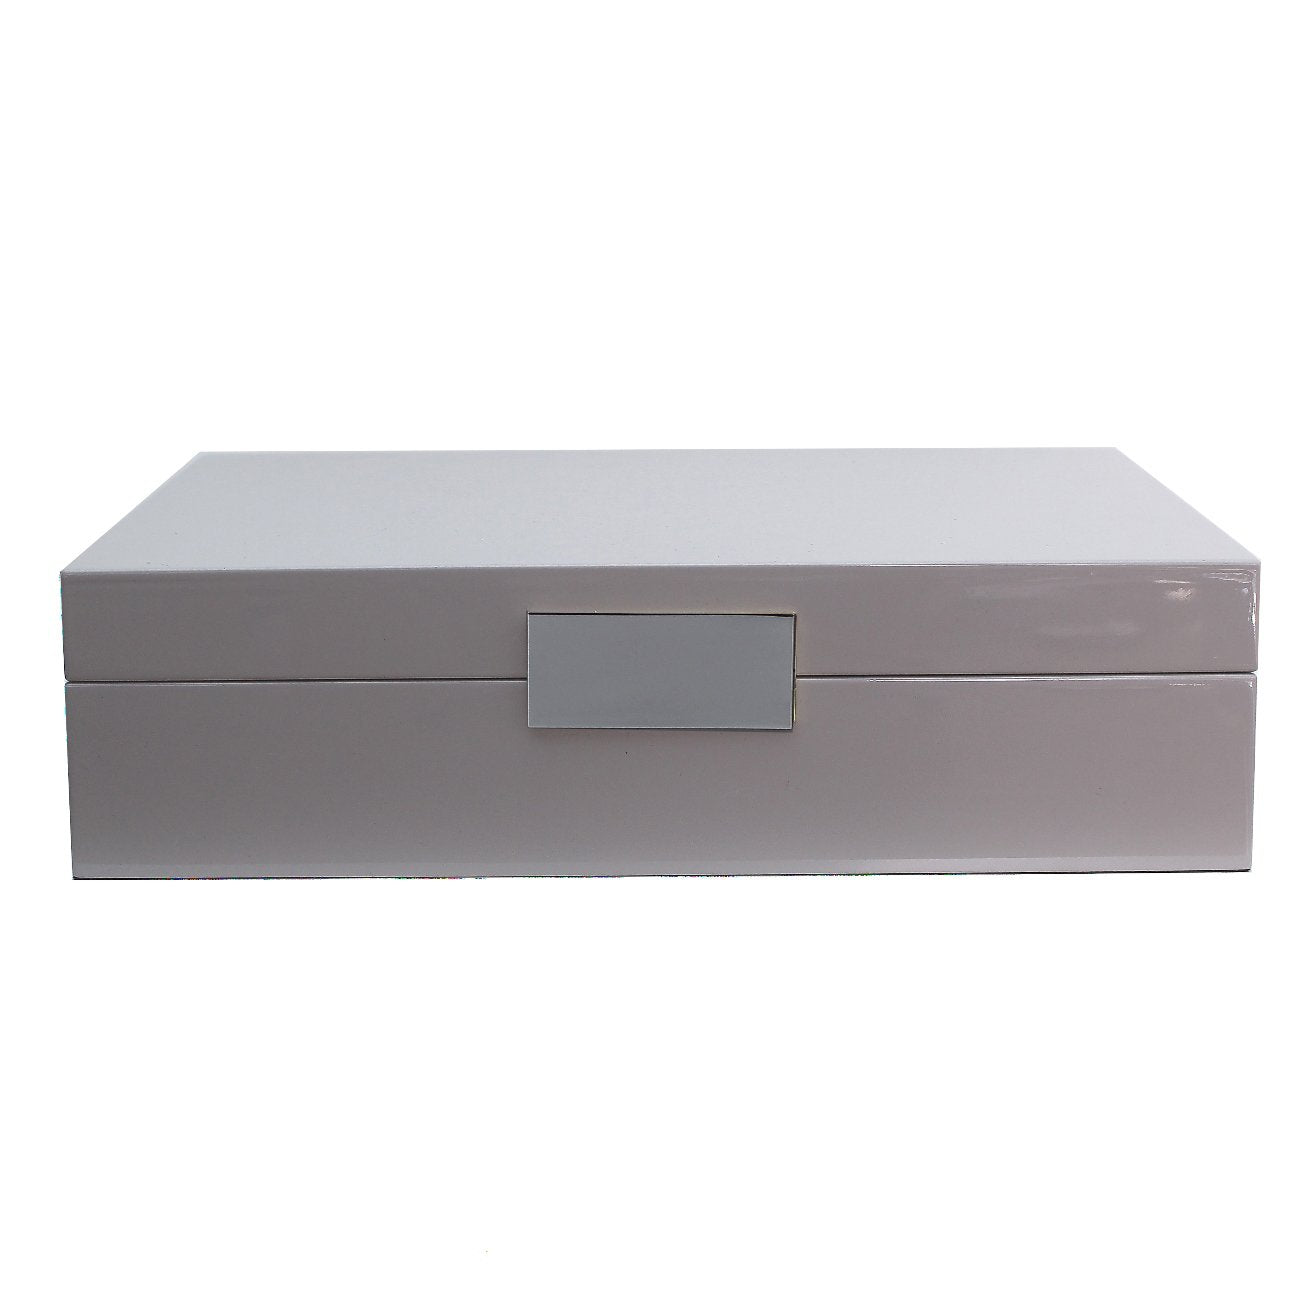 Grande scatola per orologi in chiffon grigio e argento